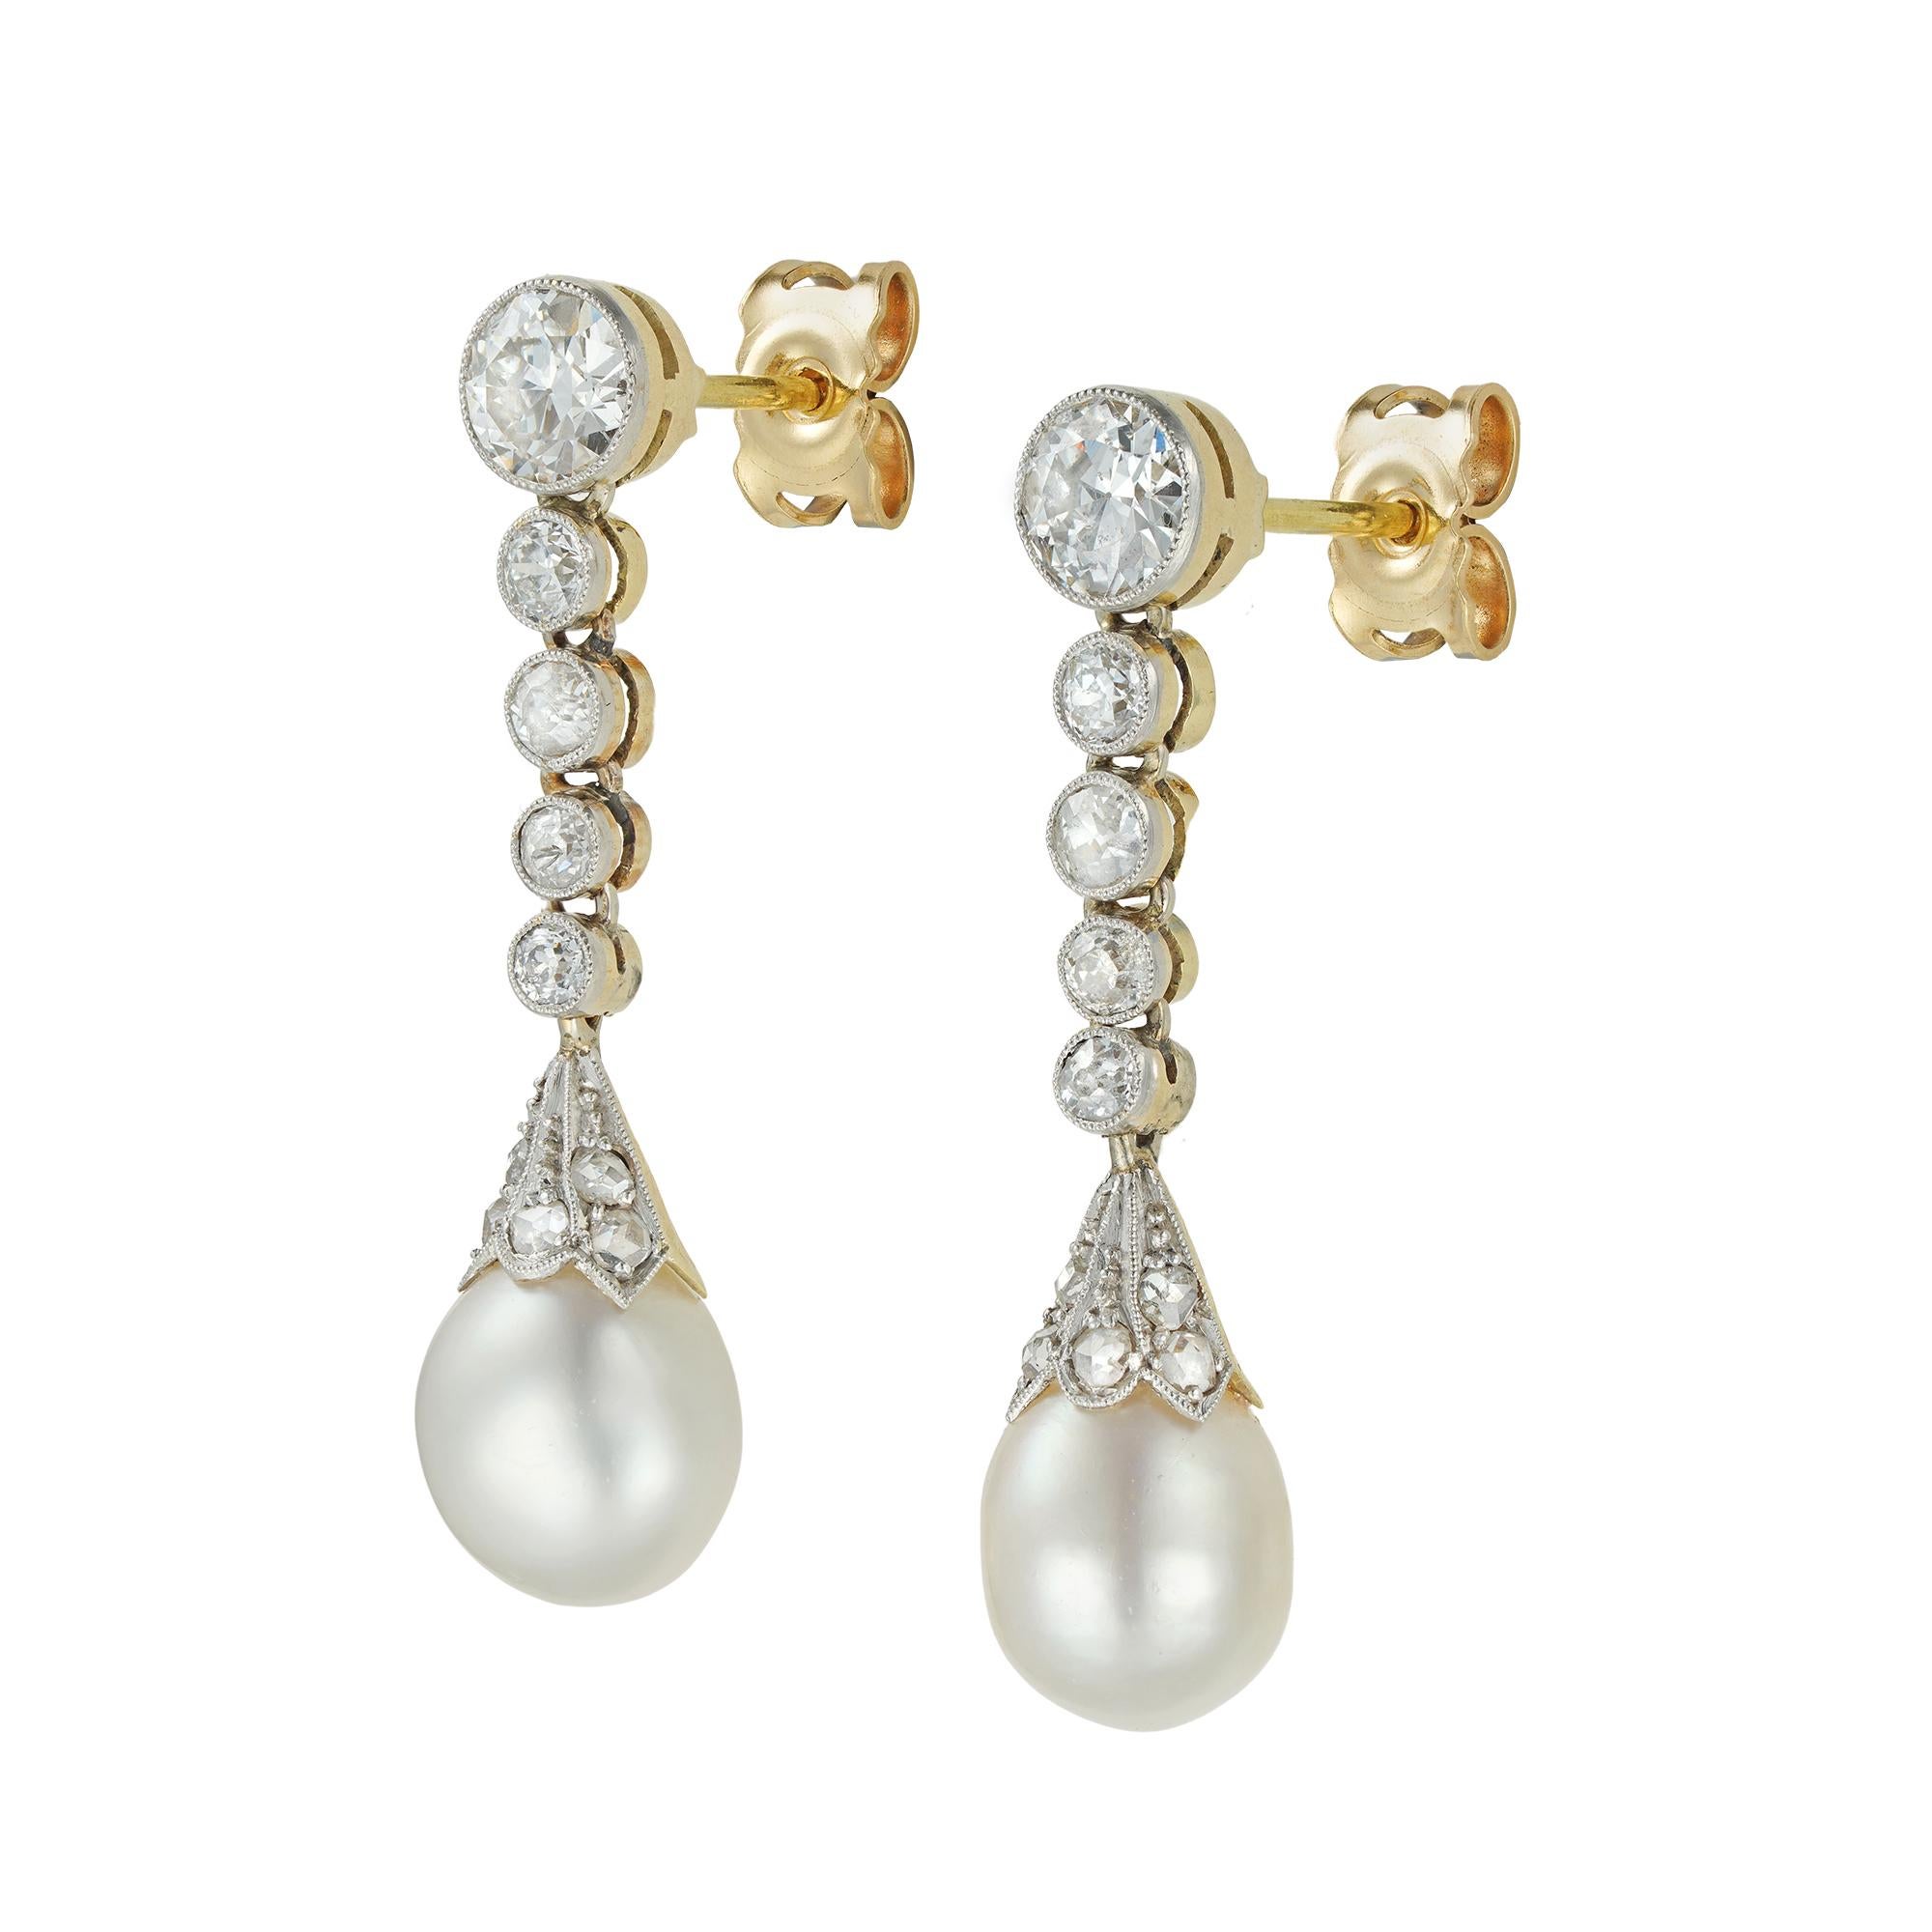 Ein Paar edwardianischer Perlen- und Diamanttropfenohrringe, jeder Ohrring bestehend aus einer natürlichen Tropfenperle, die von einer mit Diamanten im Rosenschliff besetzten geriffelten Kappe überragt wird, die an fünf abgestuften Diamanten im